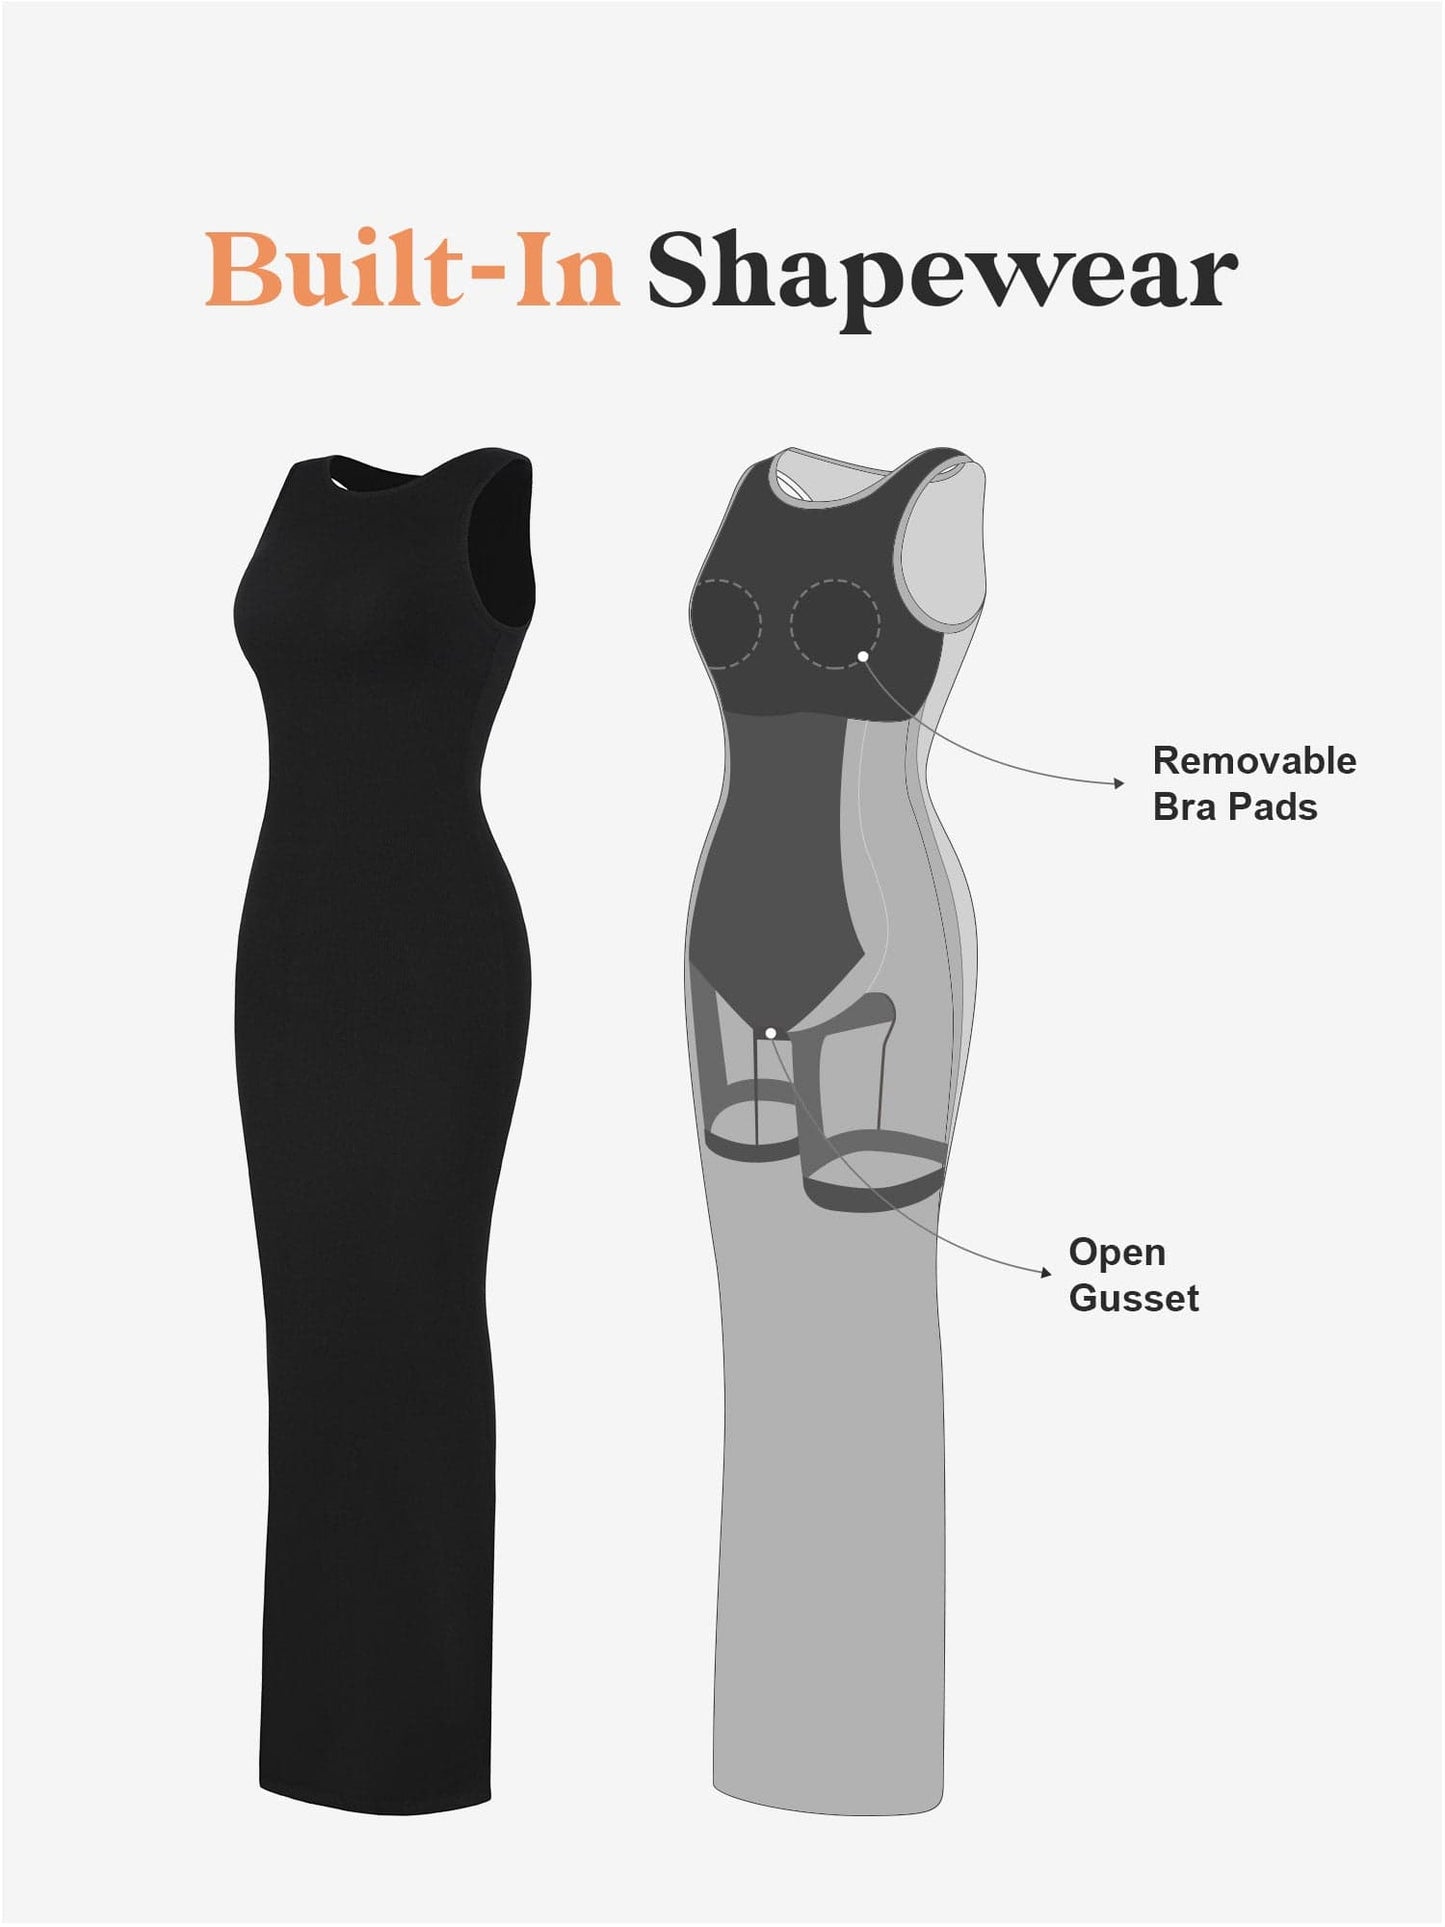 Built-In Shapewear Modal Multi-Style Dresses